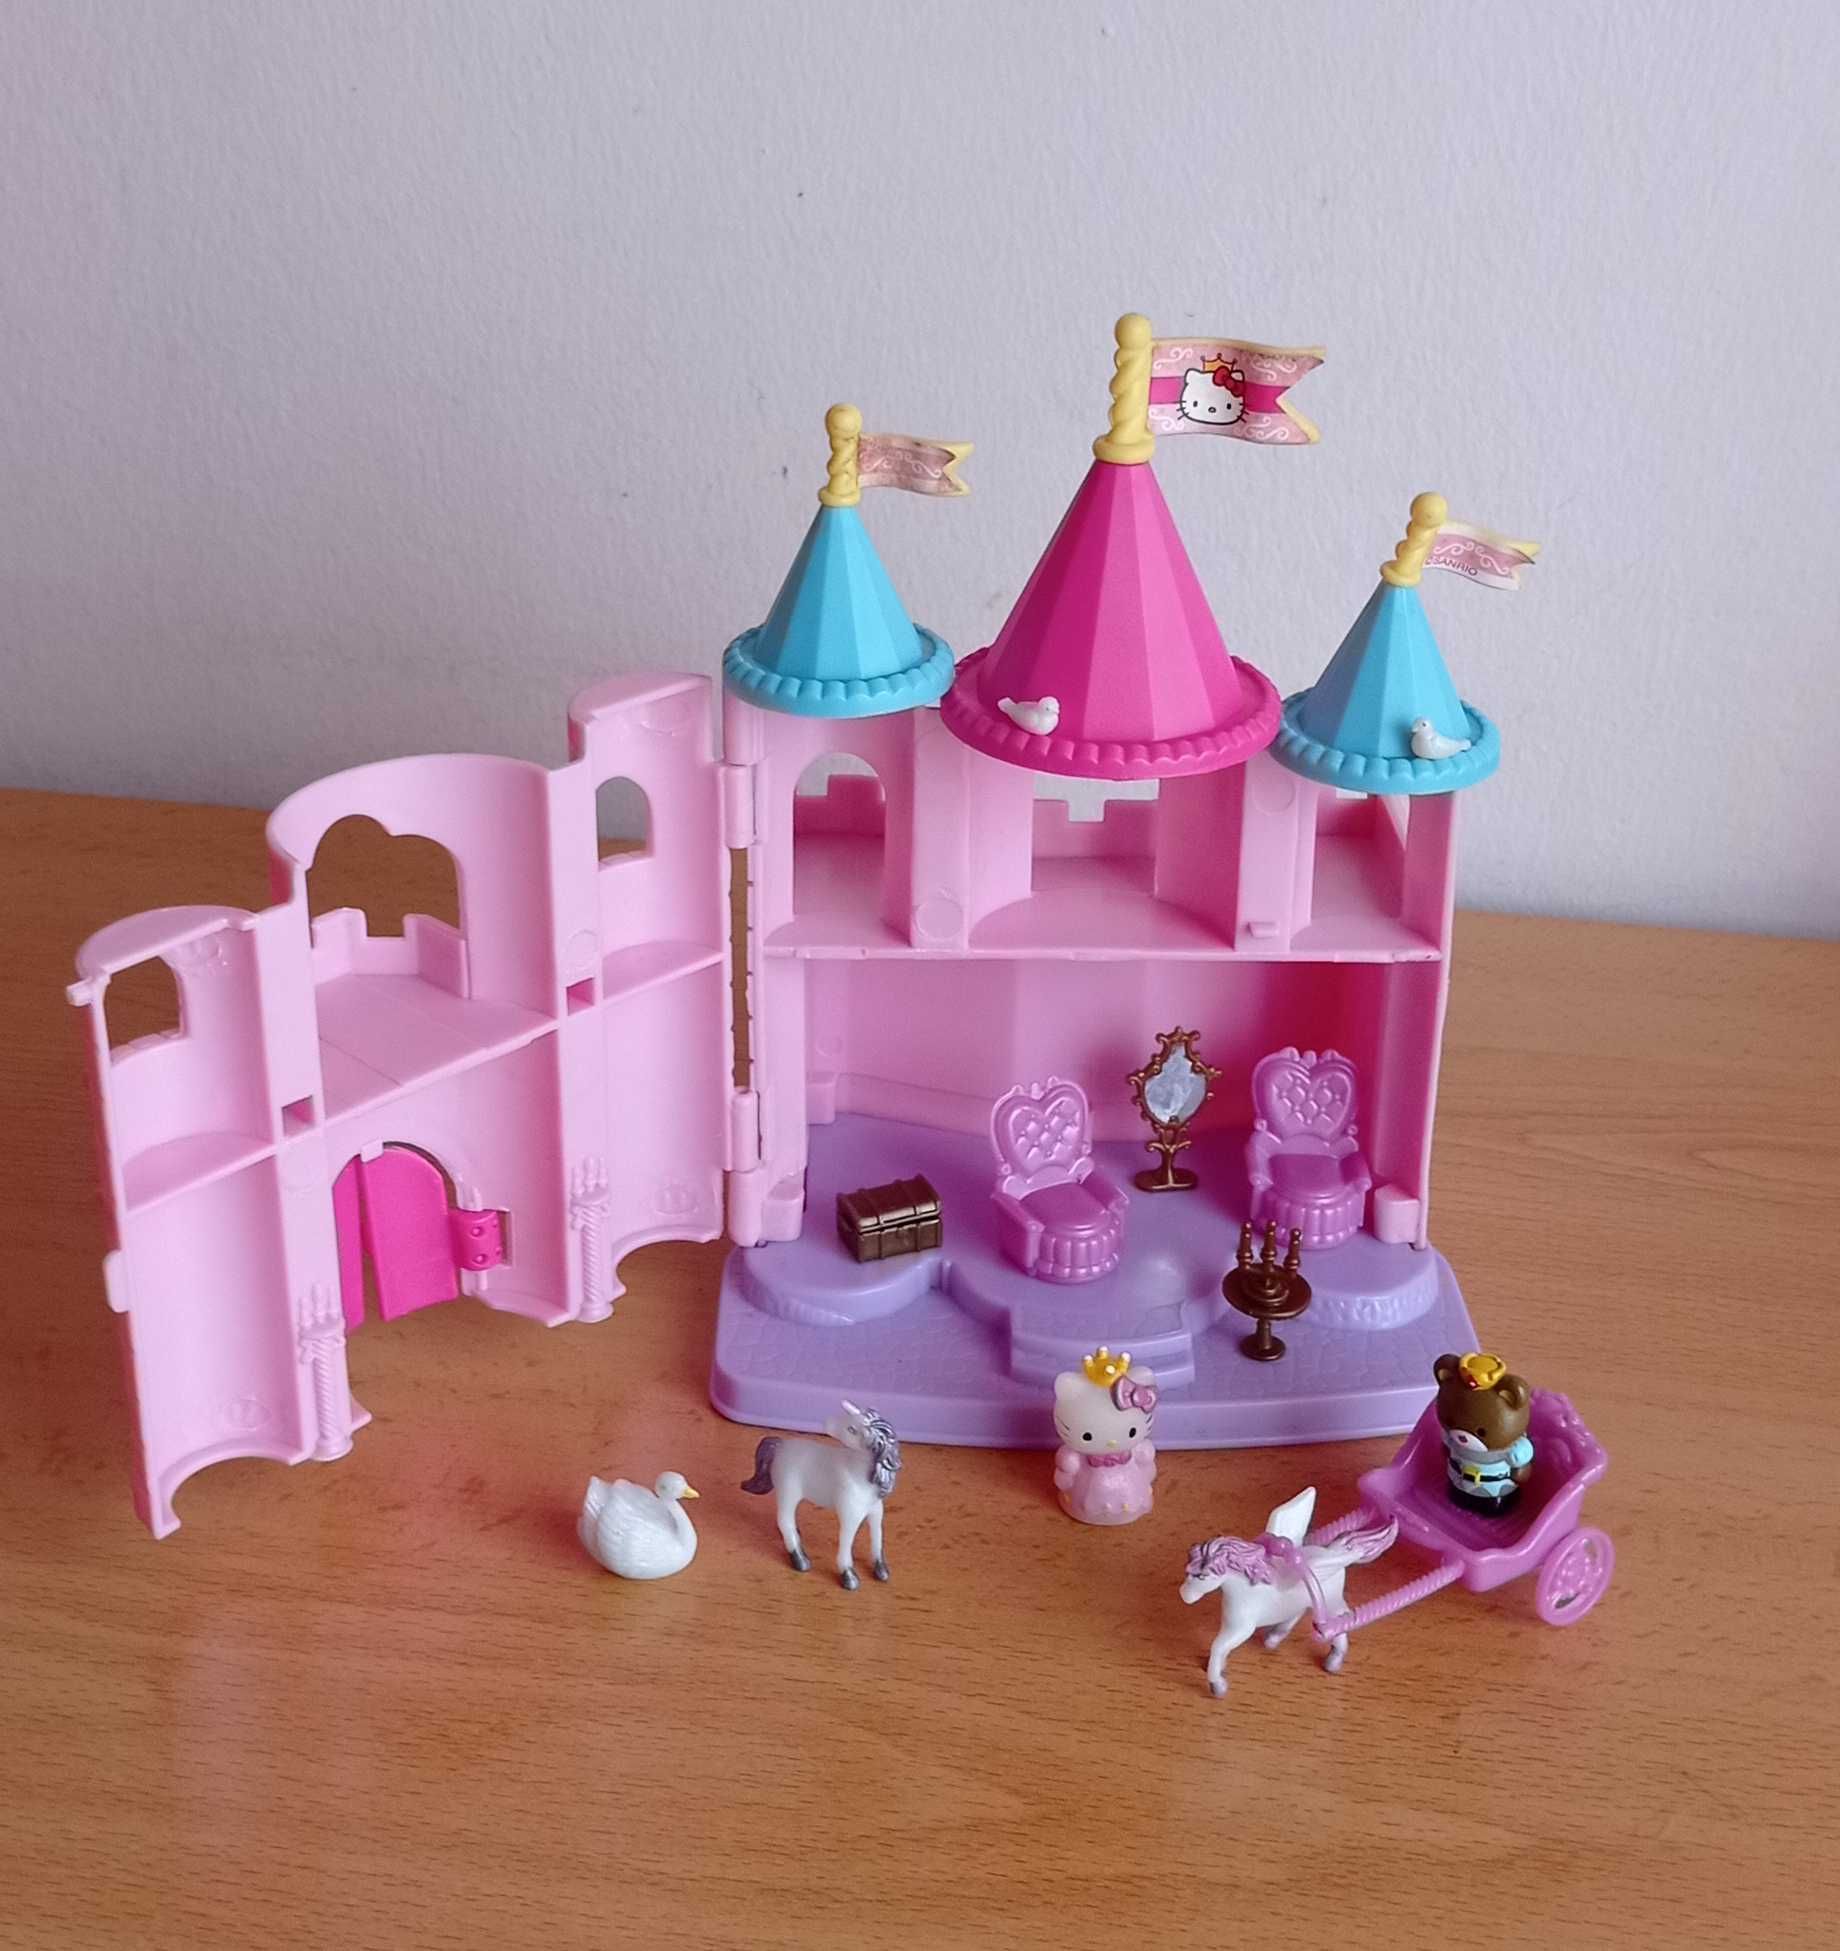 Castelo da Hello Kitty e bonecas